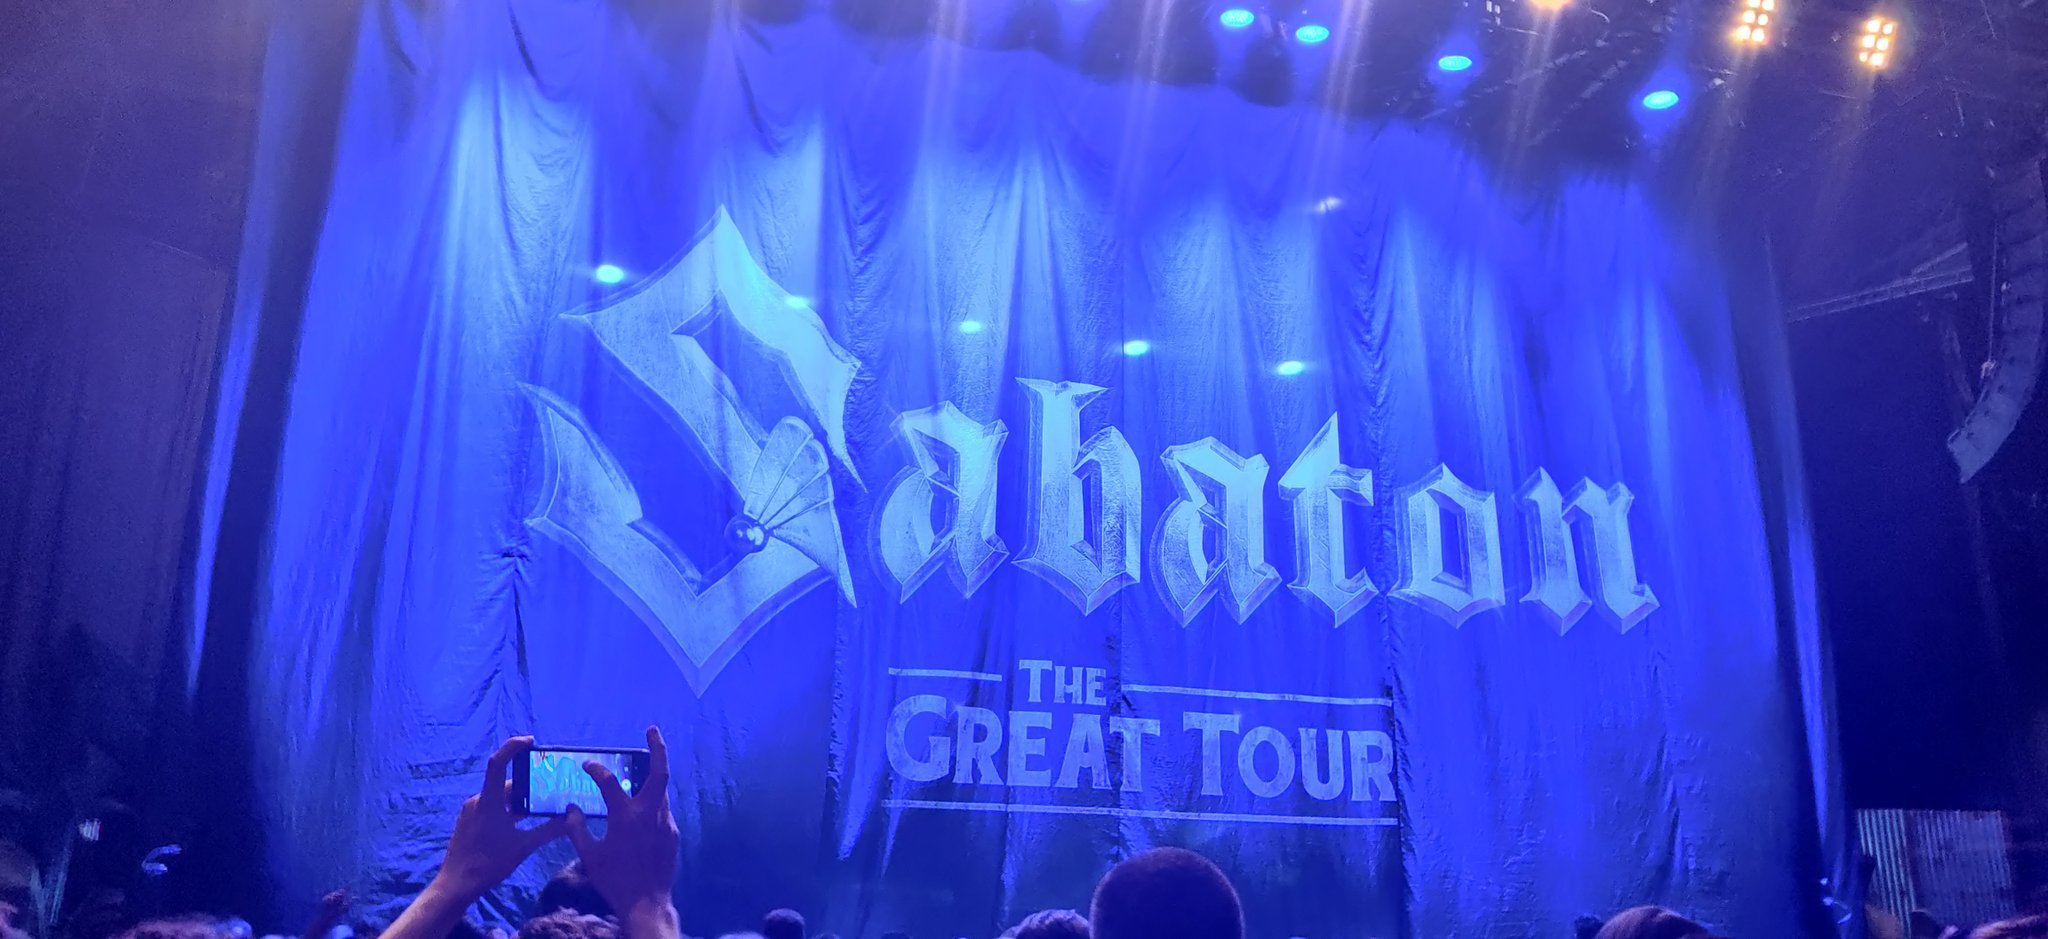 Rideau masquant la scène, avec marqué "Sabaton The Great Tour"